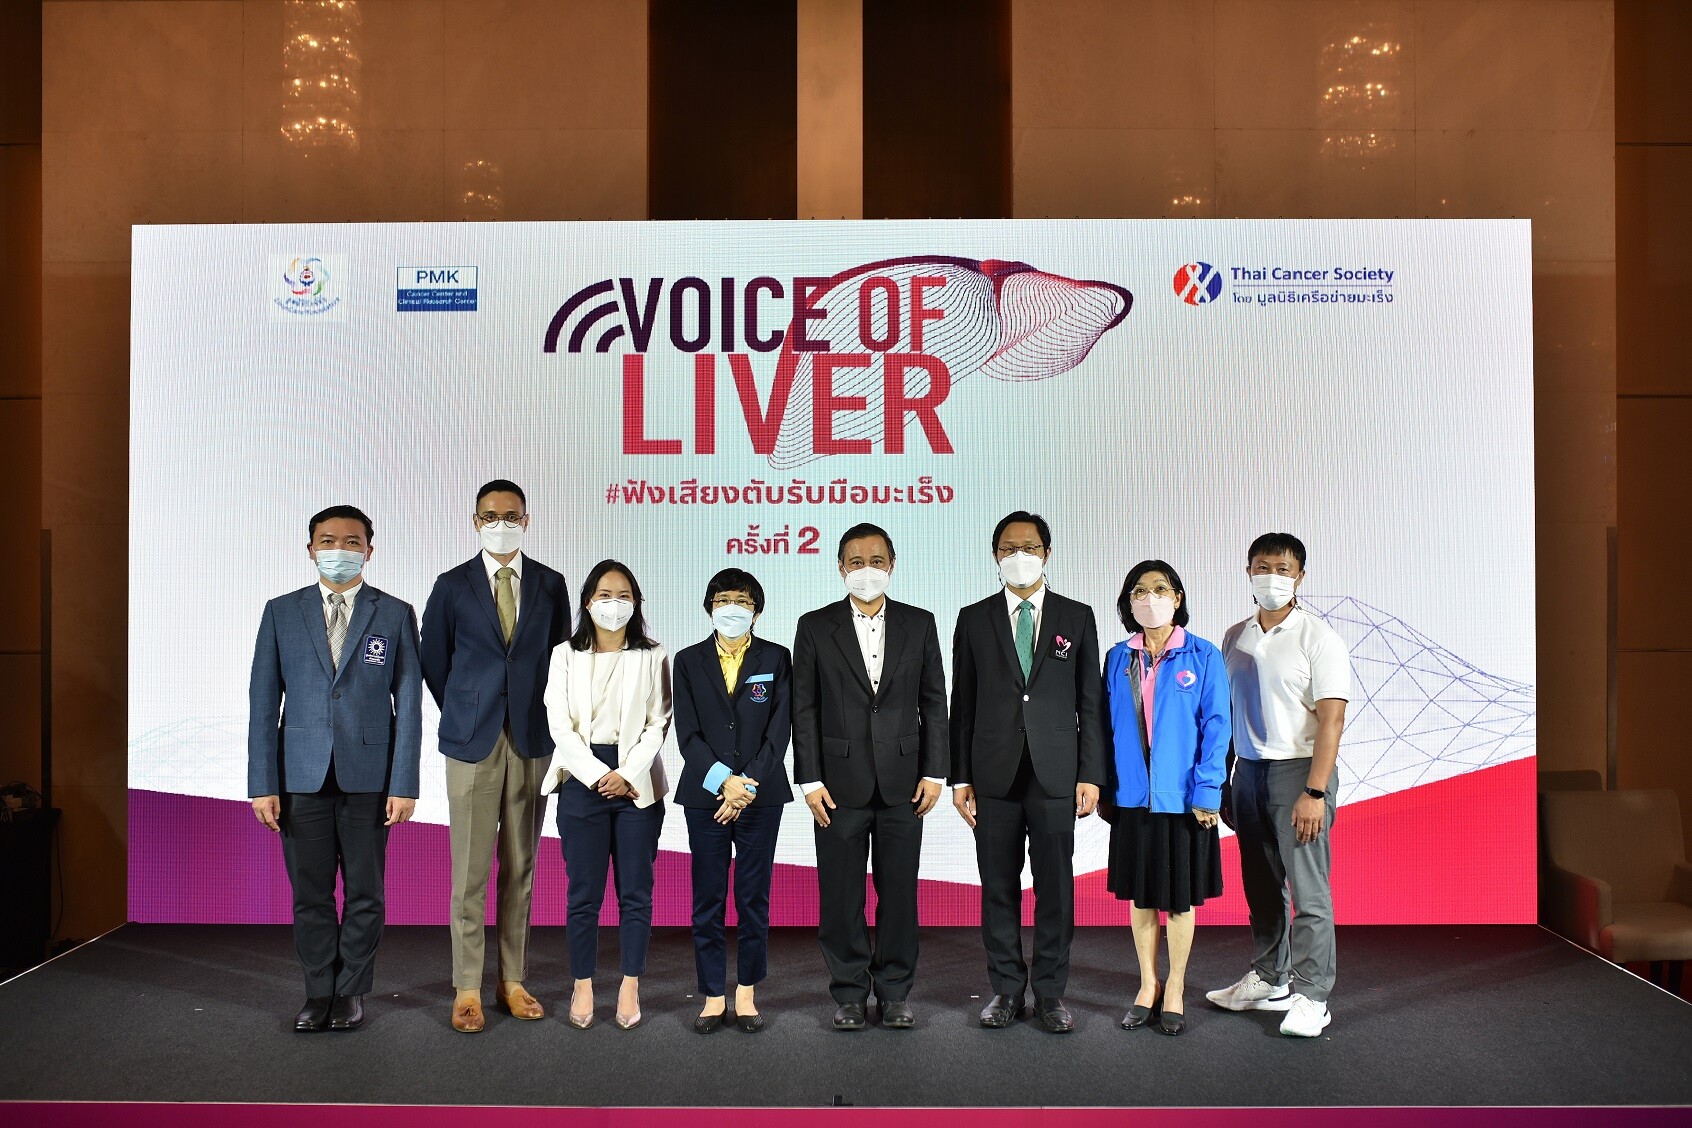 'Voice of Liver 2022 - ฟังเสียงตับ รับมือมะเร็ง ครั้งที่ 2' สร้างความตระหนักรู้ พร้อมขยายโอกาสเข้าถึงการรักษา เพื่อคุณภาพชีวิตที่ดียิ่งขึ้นของผู้ป่วยมะเร็งตับ